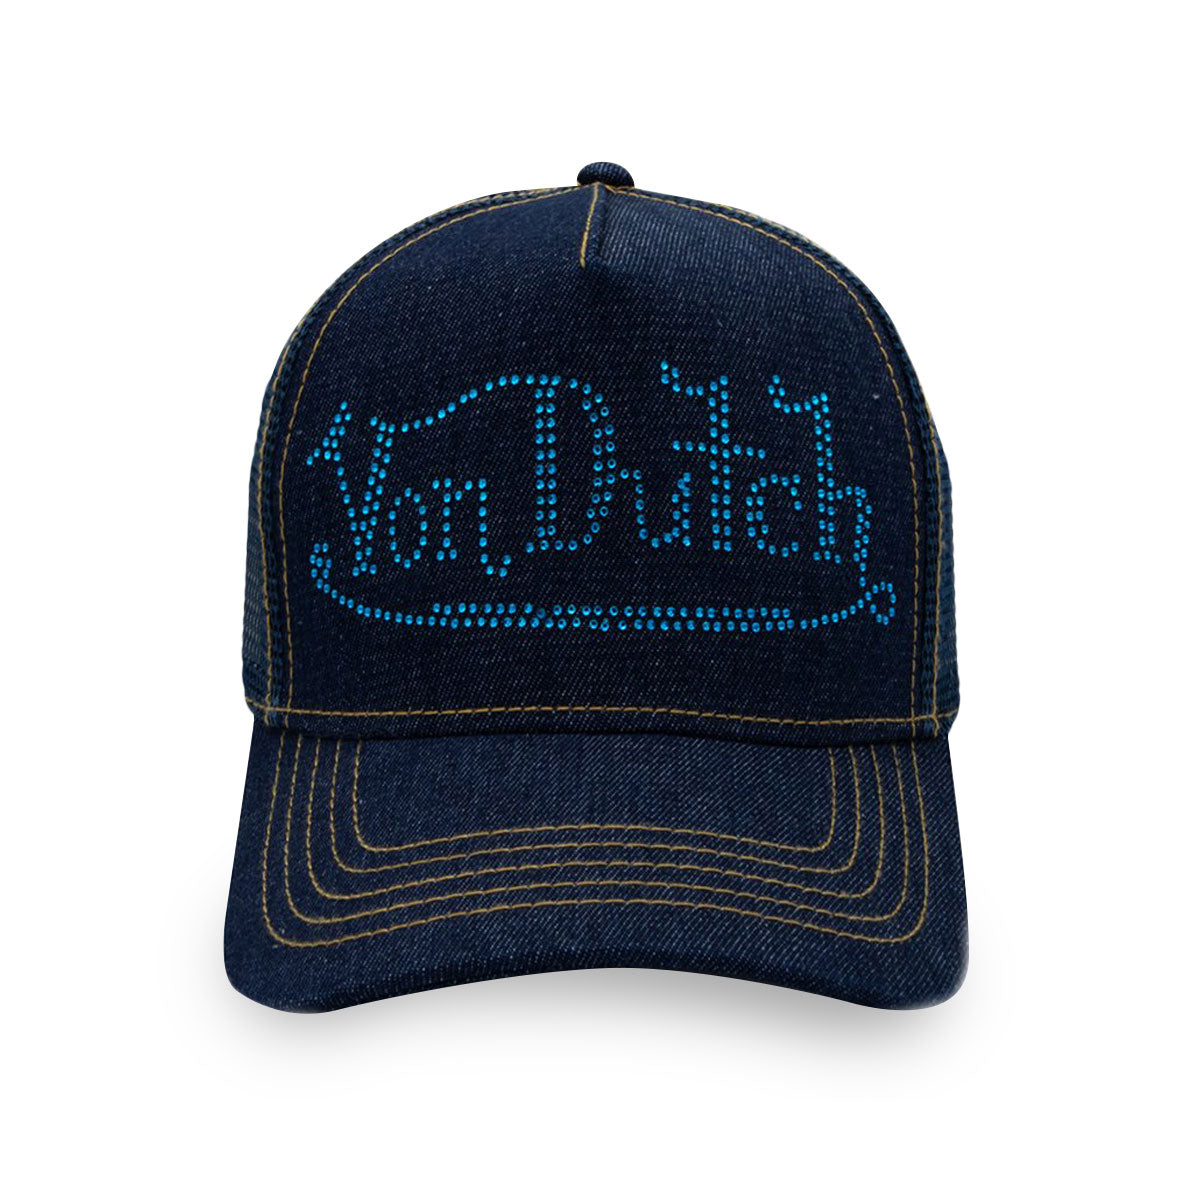 Von Dutch' Trucker Hat: The Surprising Racist Origins